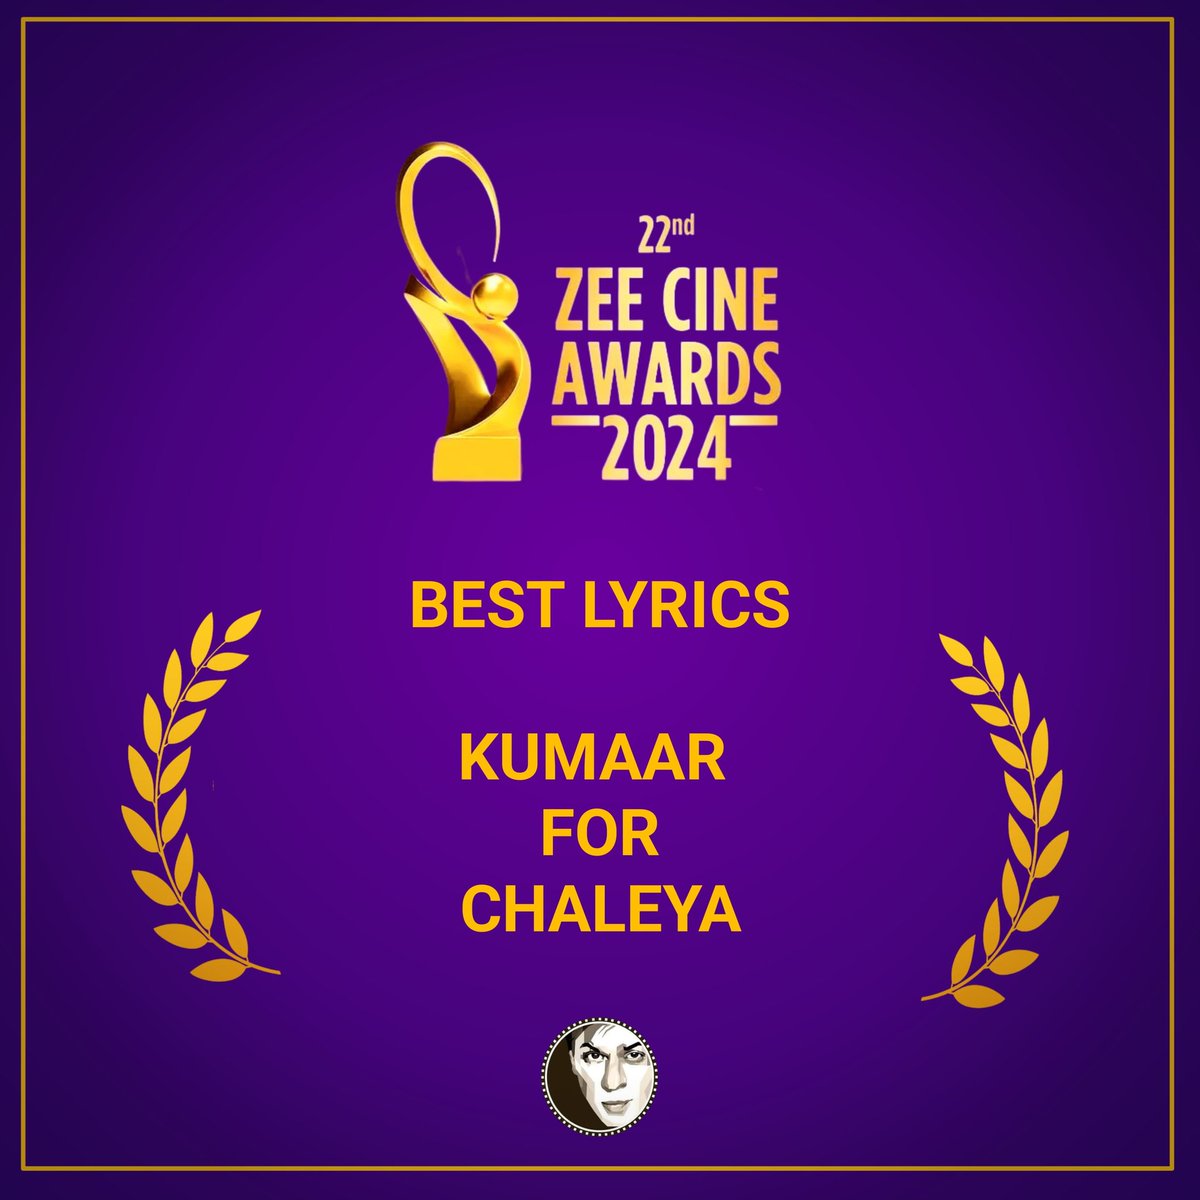 Another win for #Jawan at #ZeeCineAwards2024 ! 🔥 Congrats to Kumaar for bagging the Best Lyrics Award for Chaleya! 🏆👏 @iamsrk @ZeeCineAwards @kumaarofficial #Chaleya #ShahRukhKhan #SRK #ZeeCineAwards2024 #KingKhan